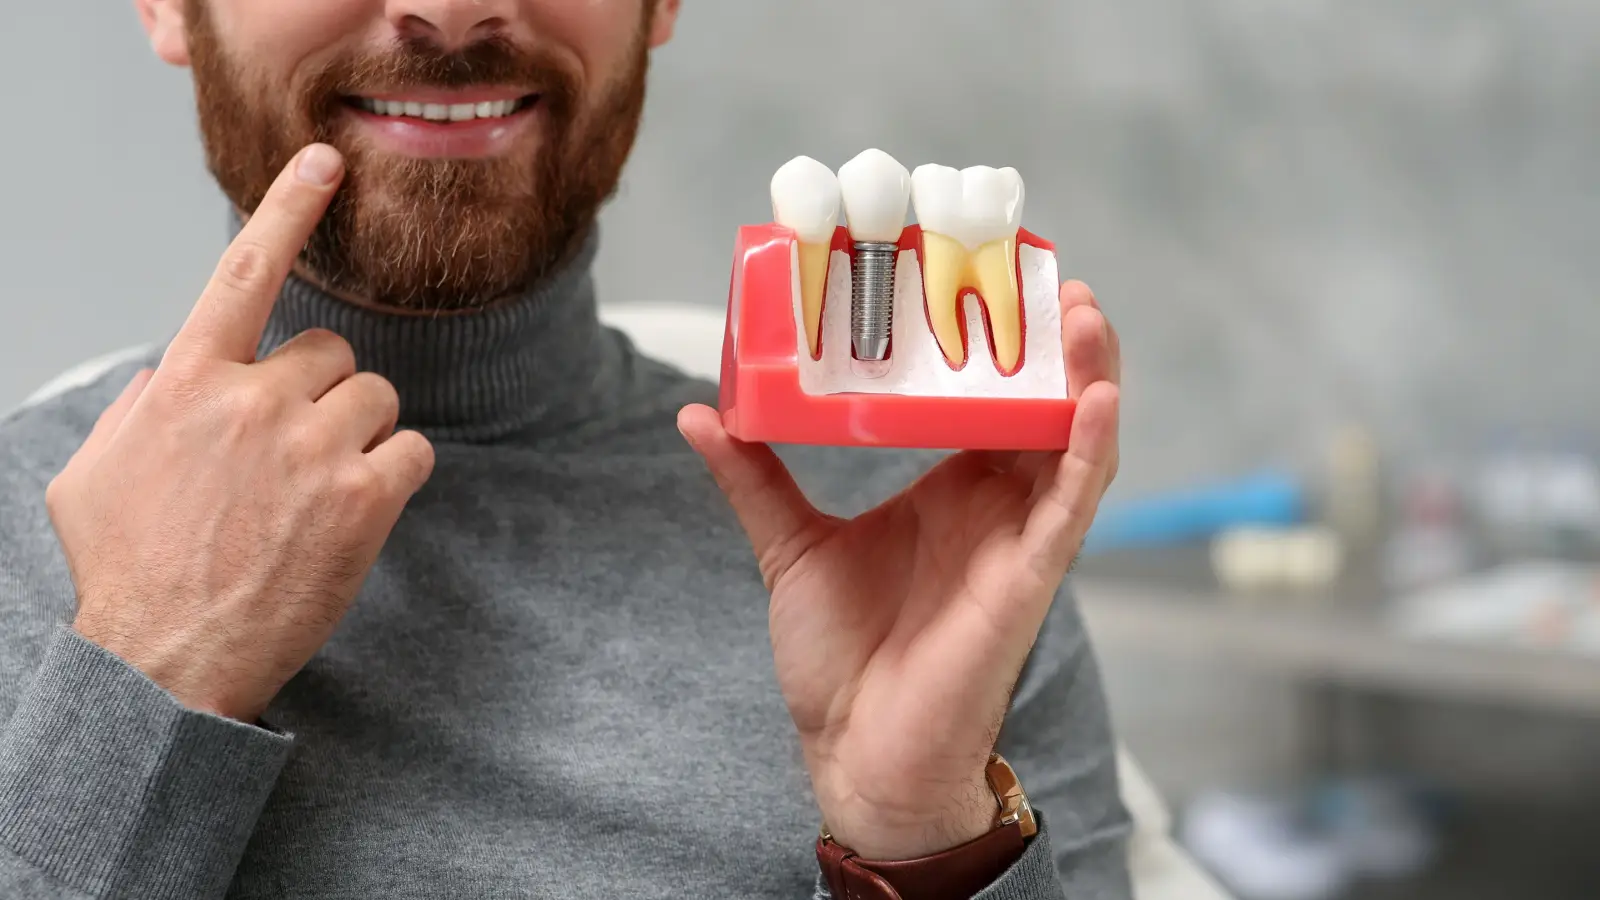 ما هي أنواع تركيب الأسنان؟ وما هي مميزاتها؟